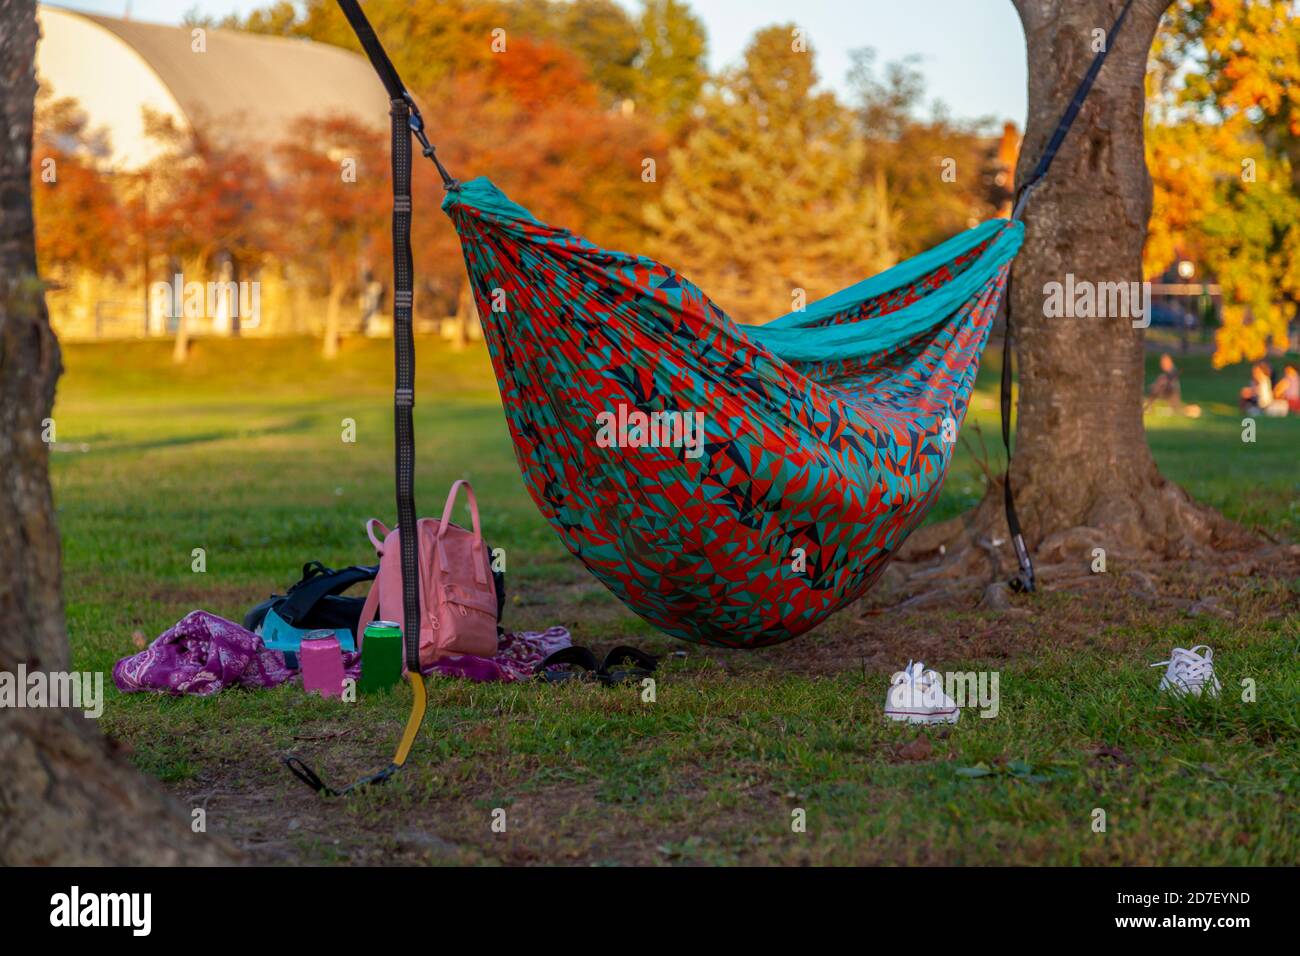 Una scena autunnale in un parco con un'amaca colorata tra gli alberi e qualcuno sta dormendo in esso. Uno zaino rosa, sneakers, bevande in scatola sono scatte Foto Stock